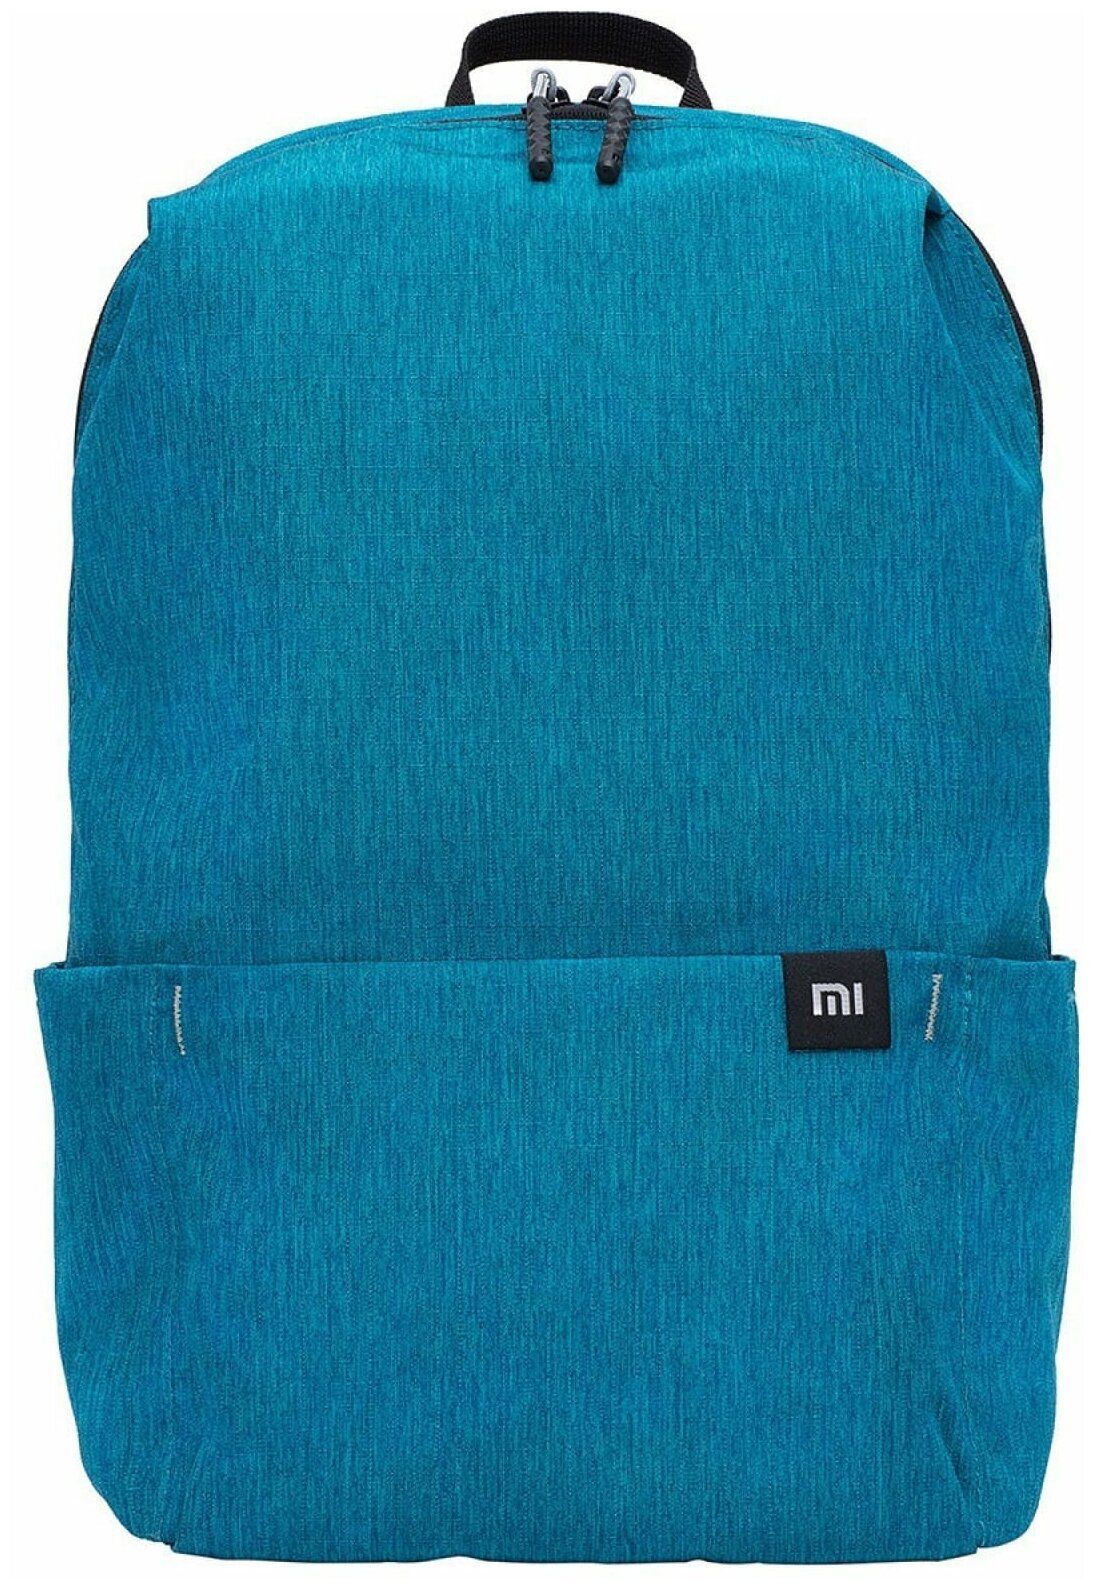 рюкзак xiaomi mi mini backpack 10l light blue Рюкзак Xiaomi Mi Mini Backpack 10L Light Blue